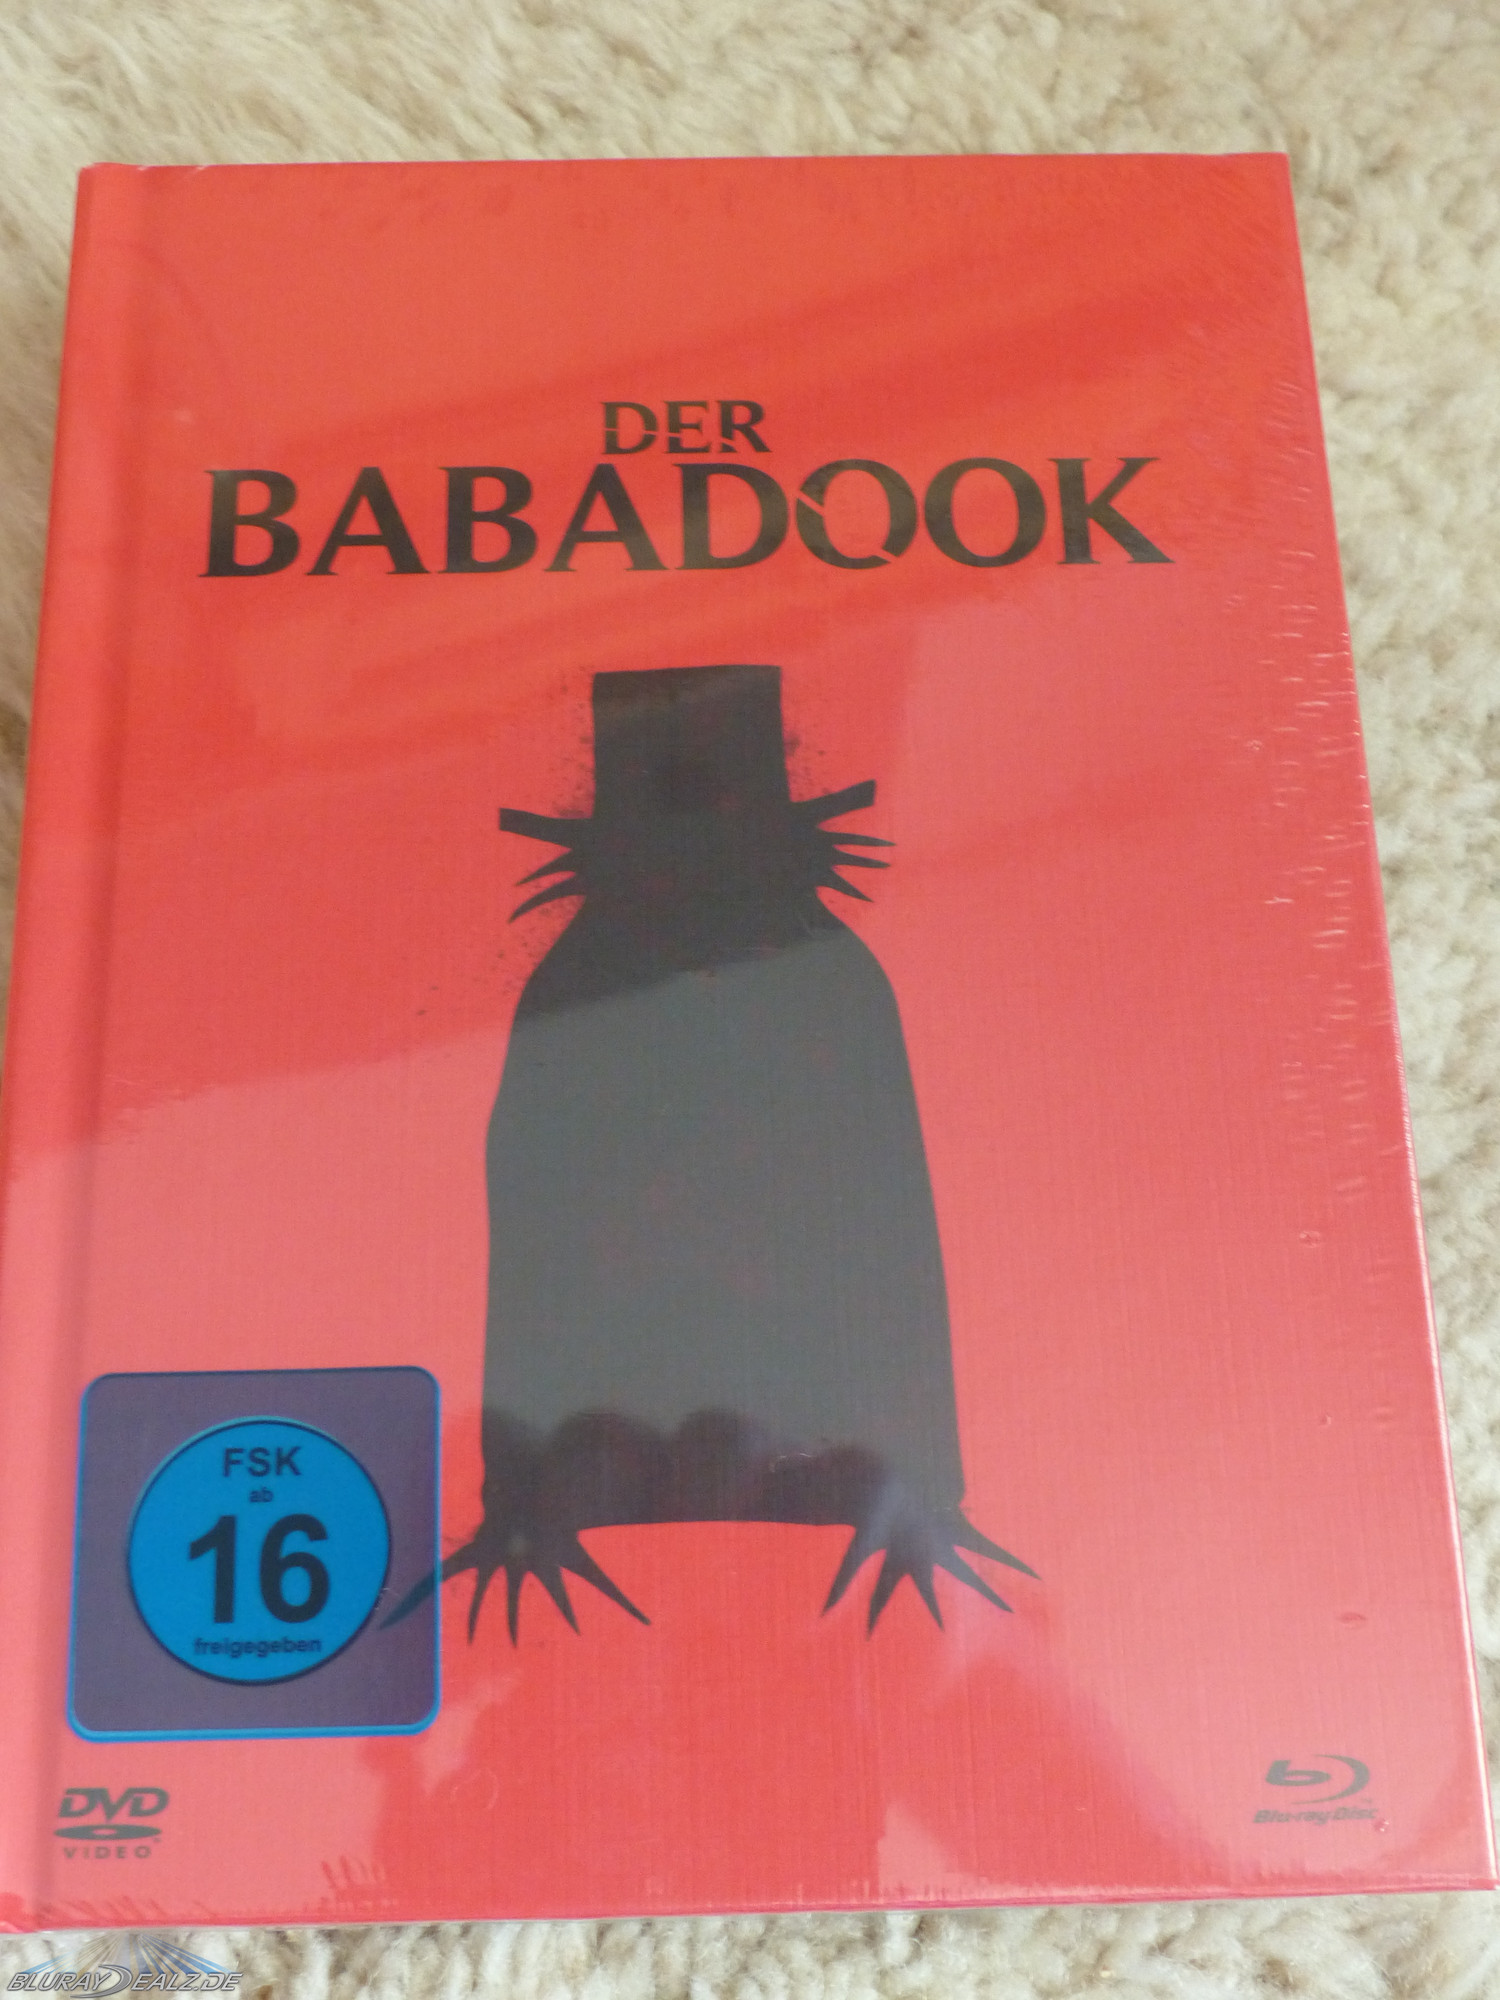 Der-Babadook-Mediabook-01.jpg